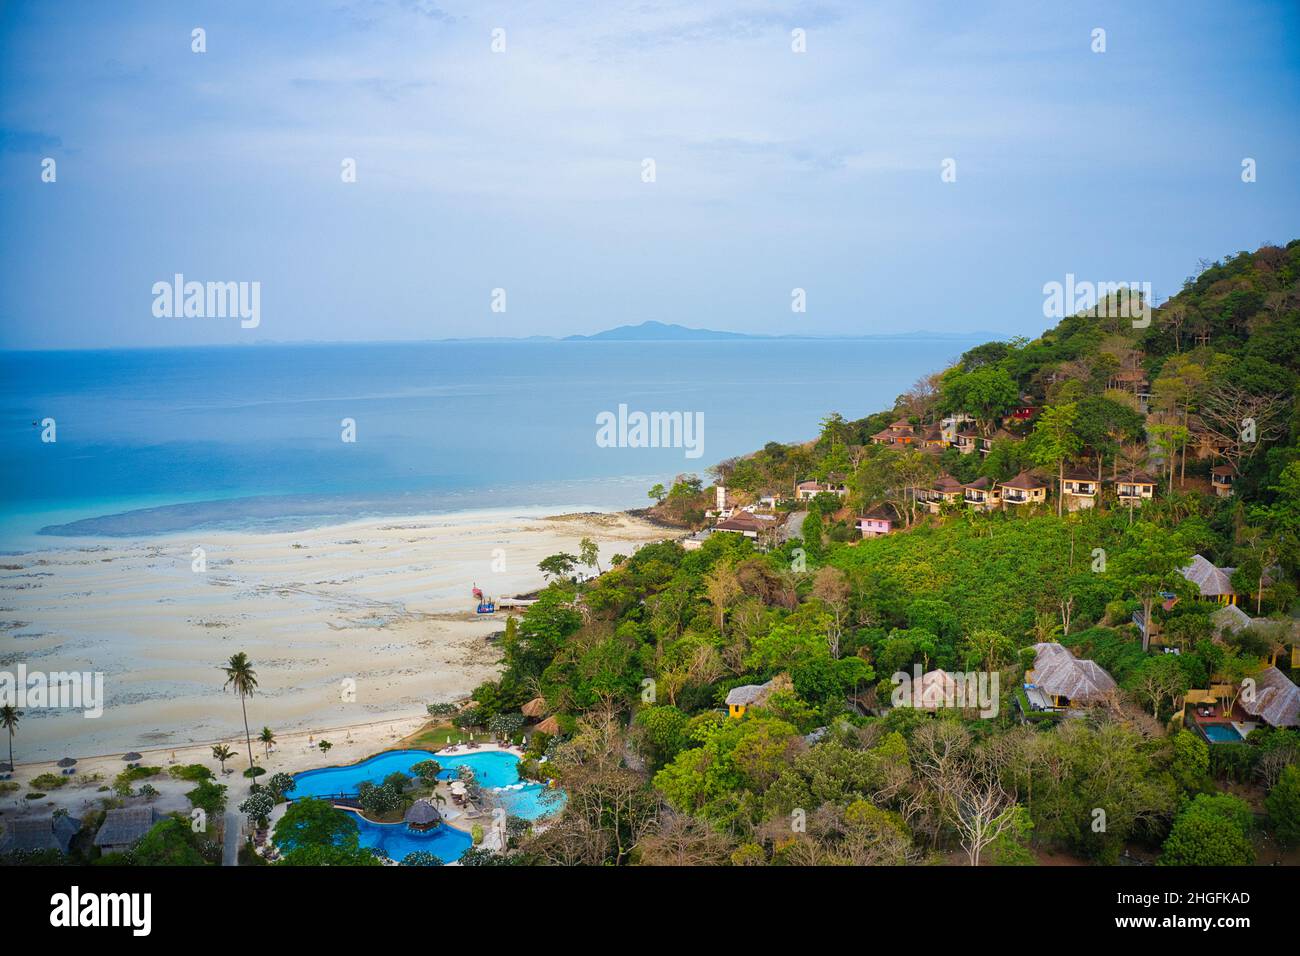 Der wunderschöne, idyllische tropische Strand von Koh Phi Phi in Thailand wurde bei Ebbe mit einer Drohne fotografiert. Stockfoto